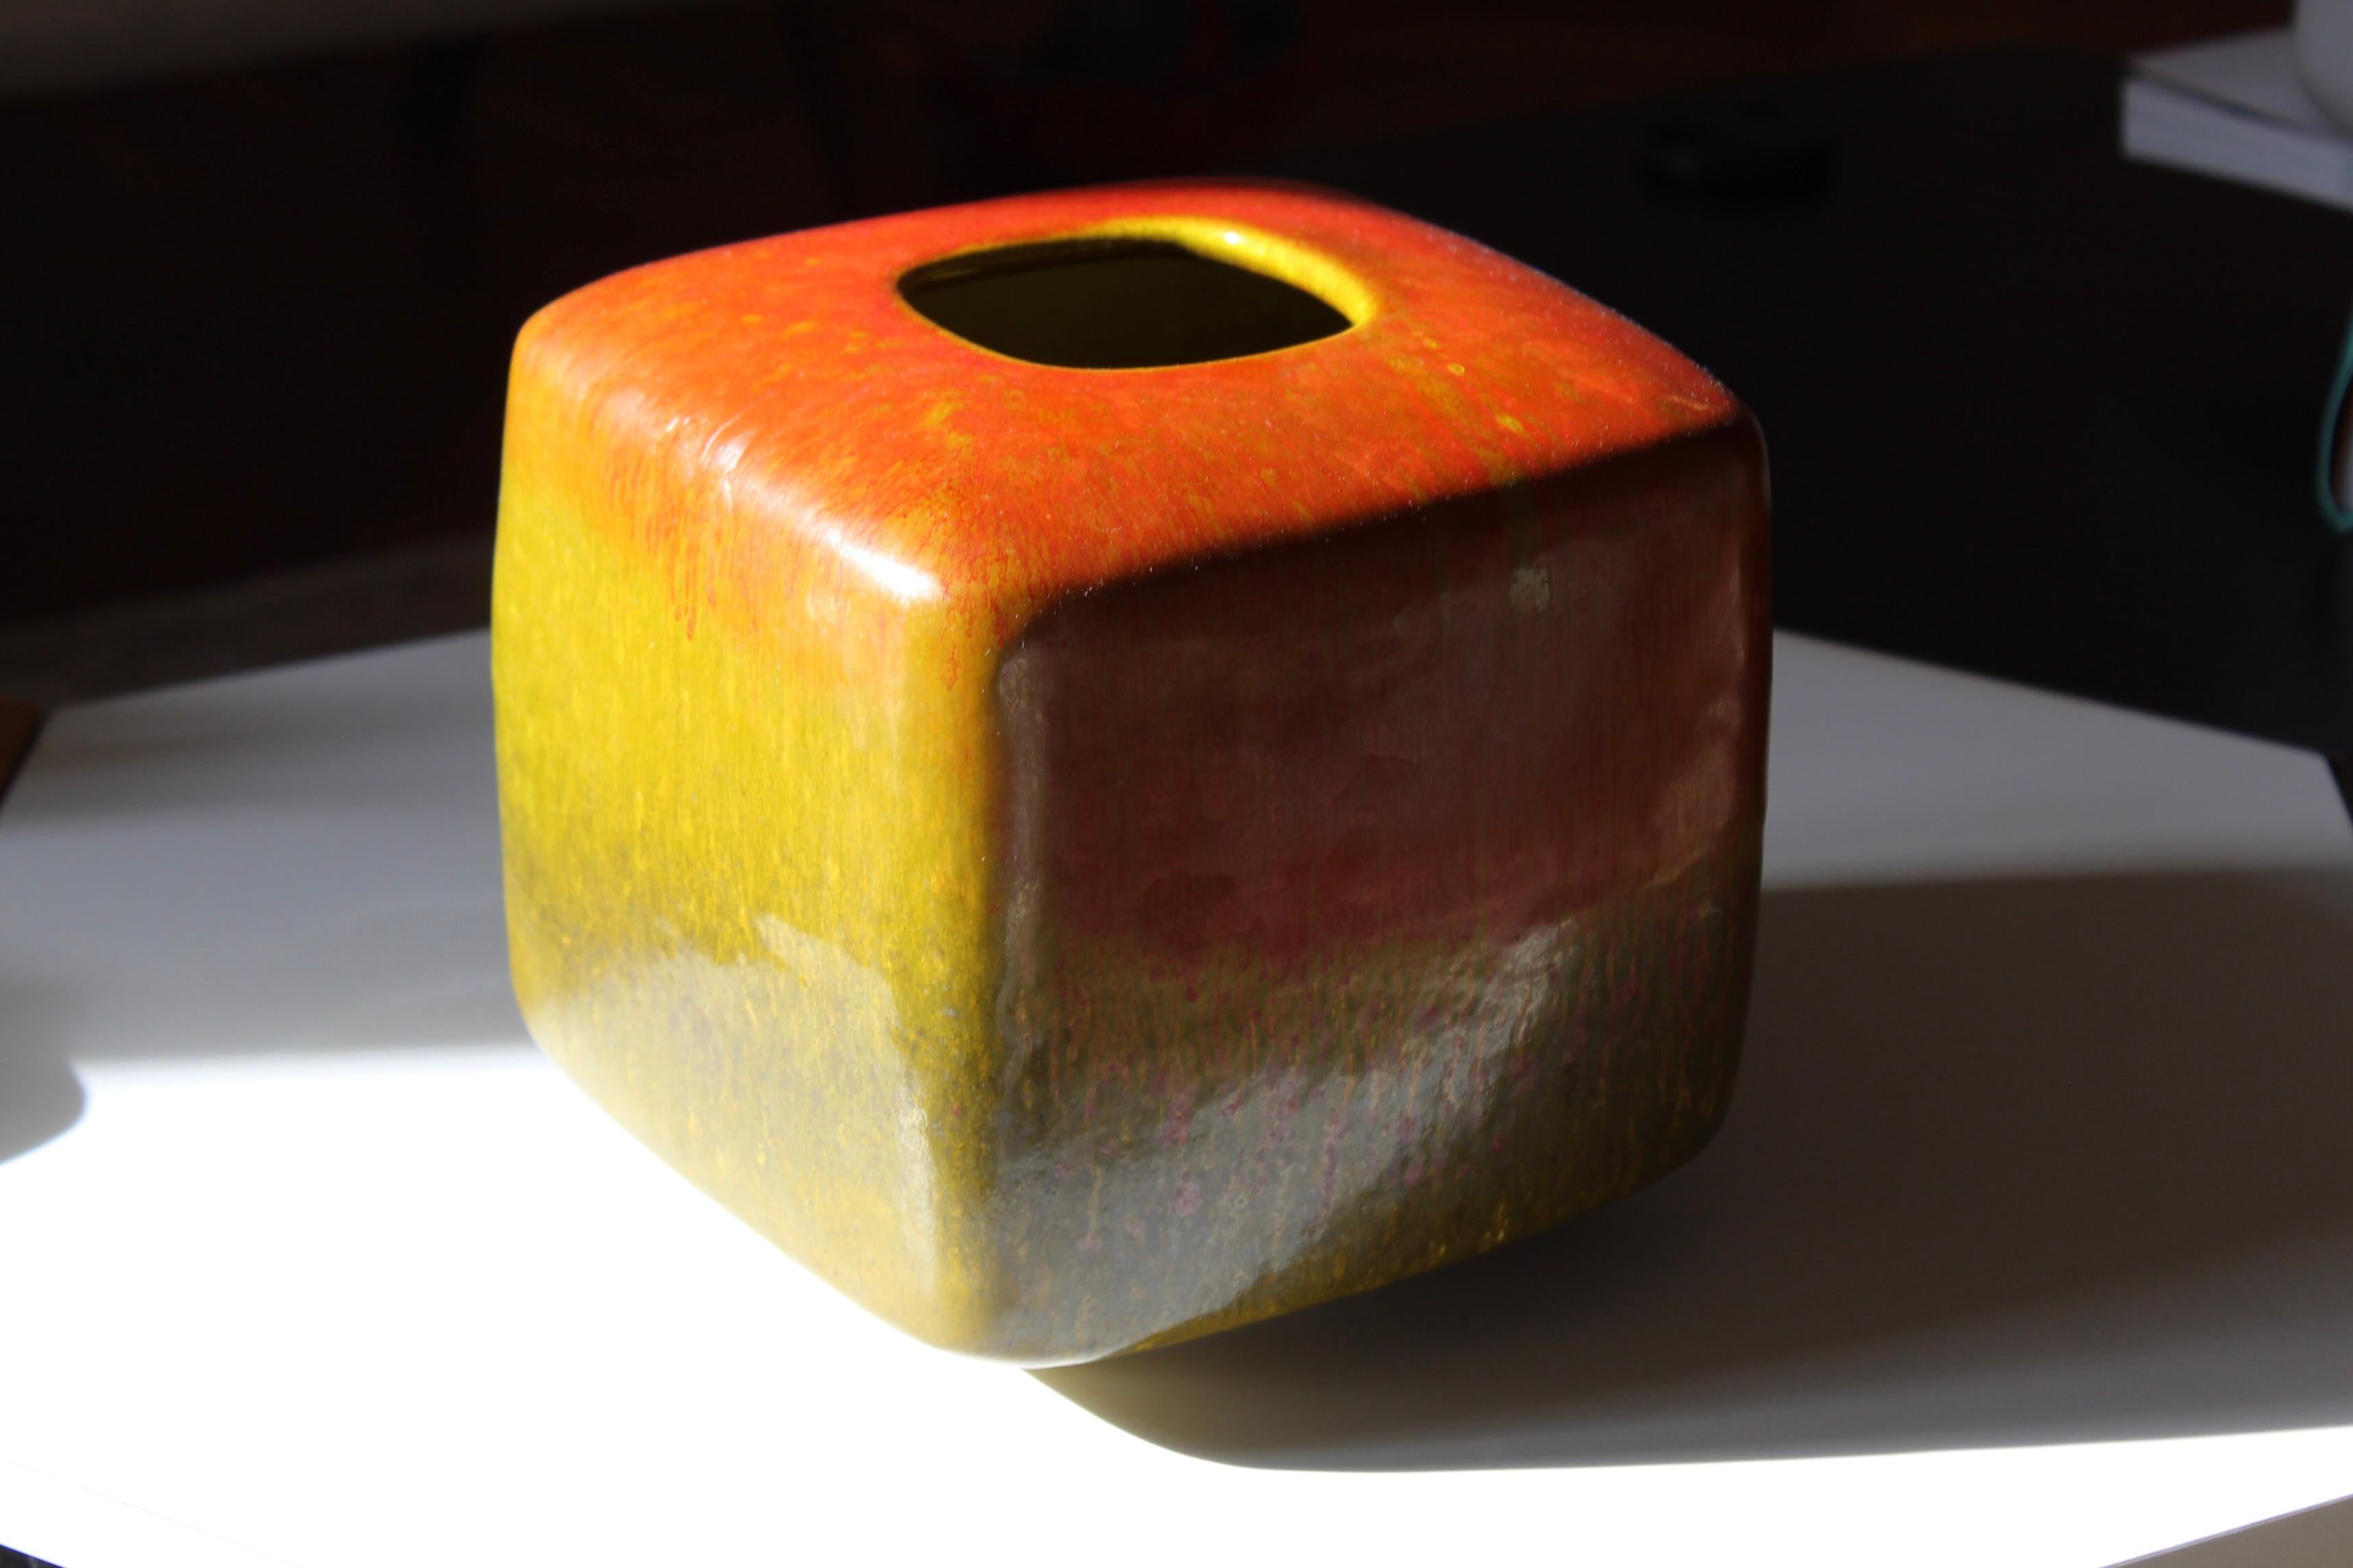 Un vase unique en céramique émaillée rouge et jaune, conçu et exécuté par Alessio Tasca. Le vase est produit dans le studio de l'artiste et présente une glaçure très artistique.